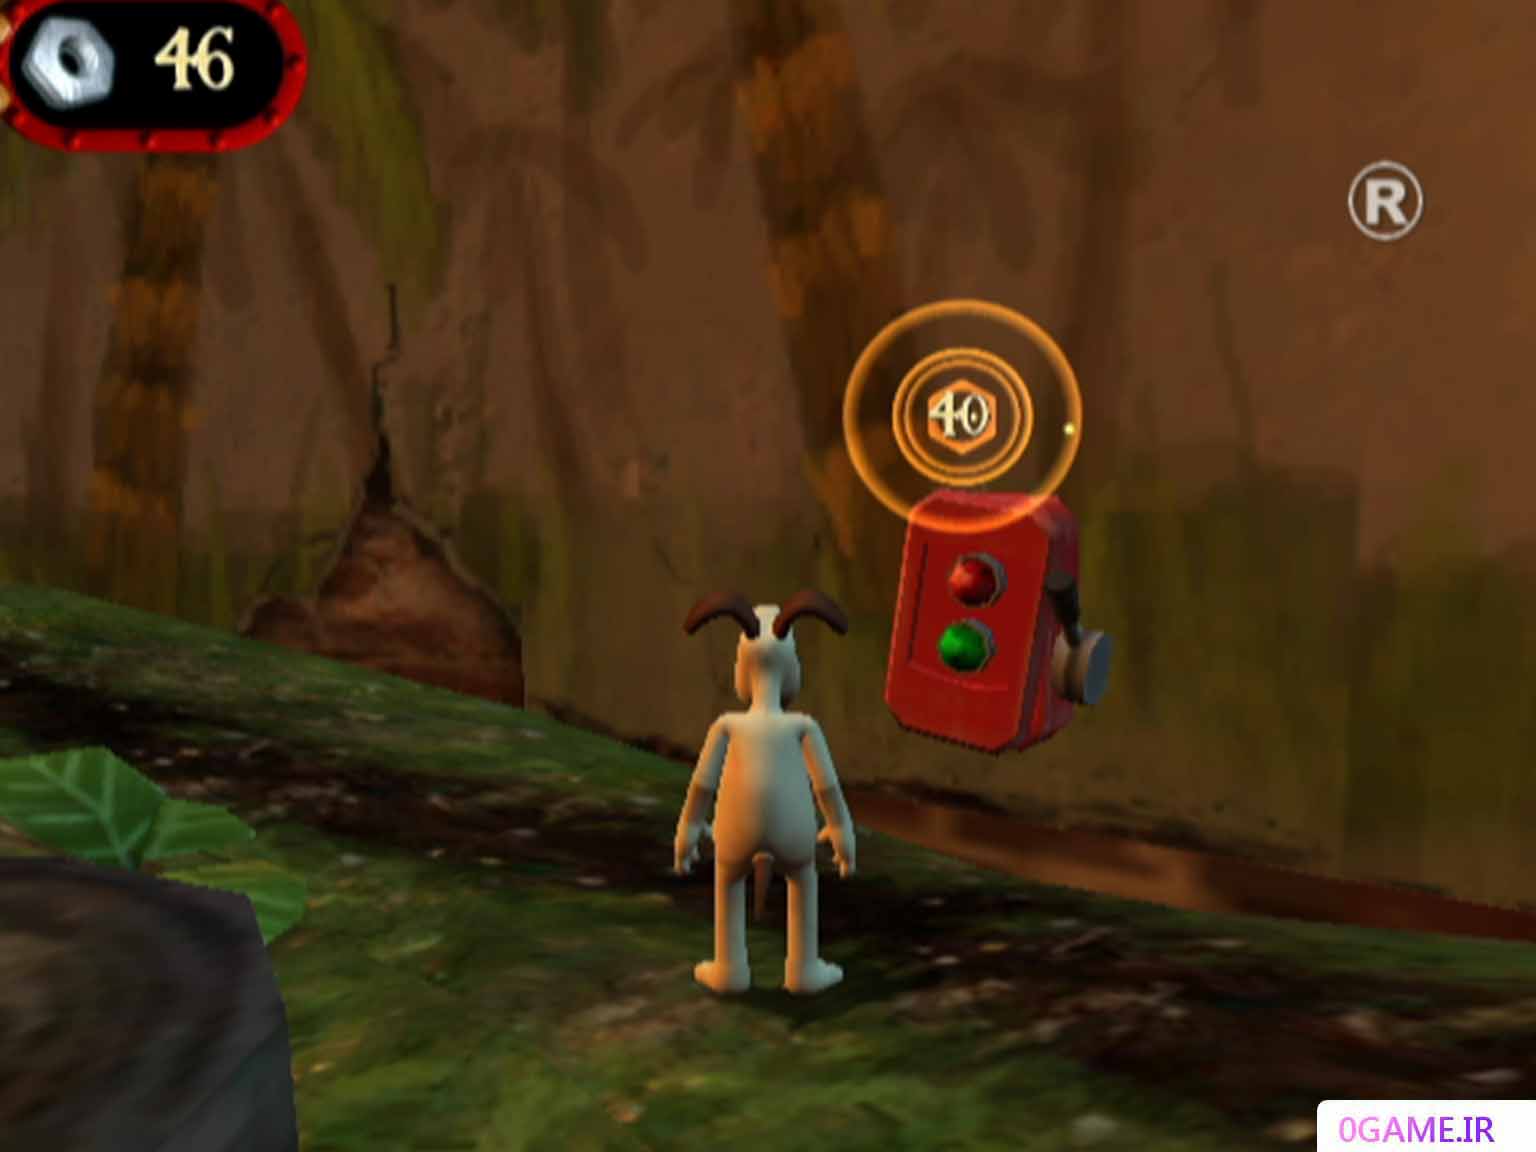 دانلود بازی والاس و گرومیت در پروژه باغ وحش (Wallace & Gromit in Project Zoo) نسخه کامل برای کامپیوتر